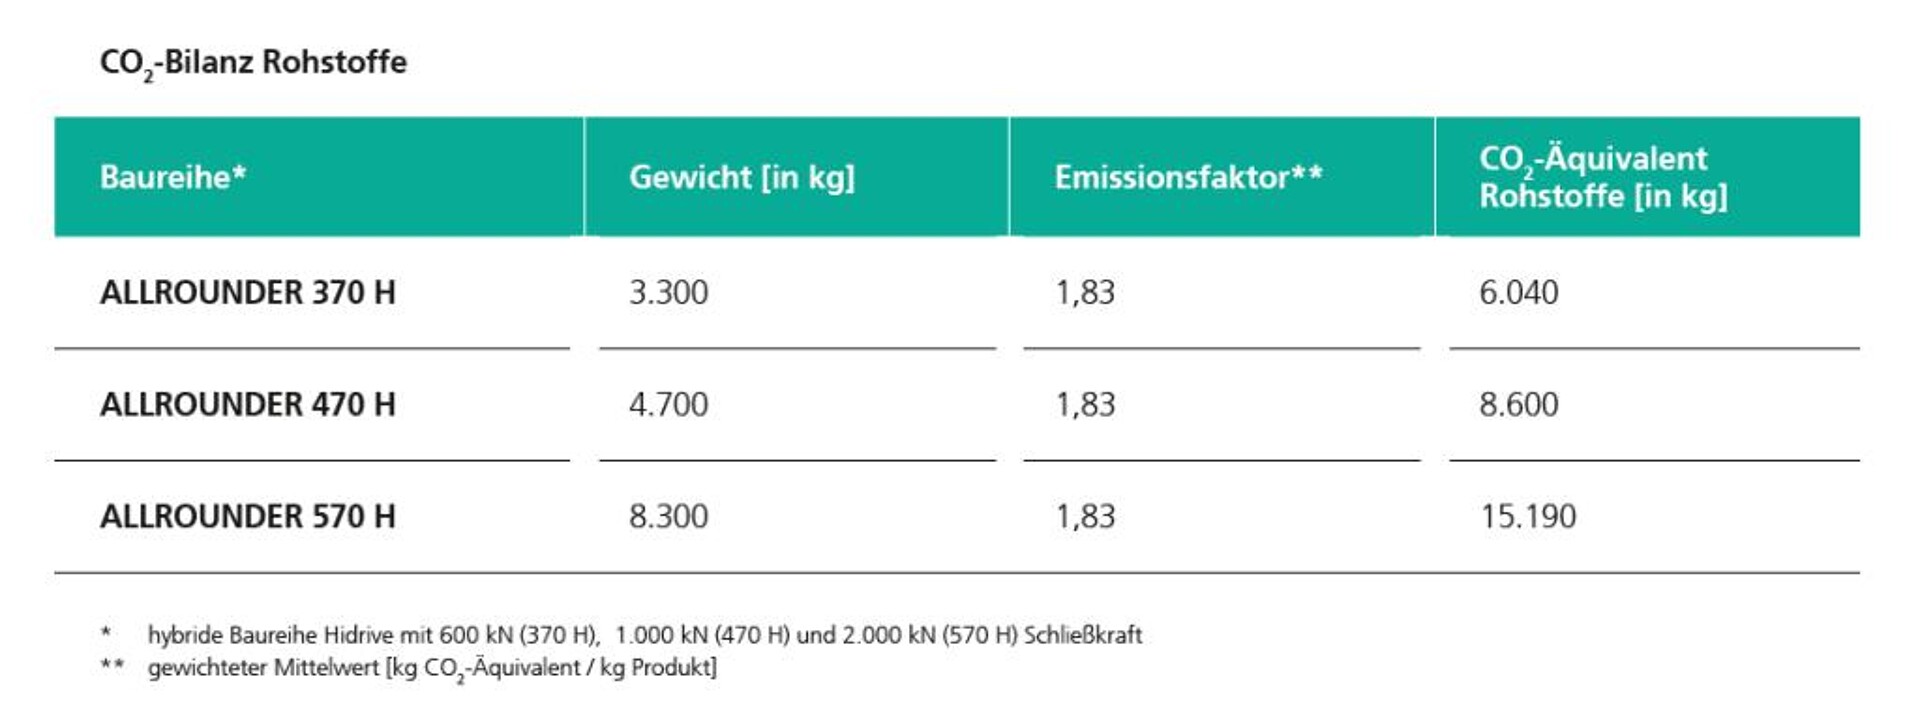 Um die rohstoffbezogenen CO2-Emissionen eines Allrounders zu berechnen, wird sein Netto-Gewicht einfach mit dem von Arburg ermittelten Emissionsfaktor 1,83 multipliziert. (Abb.: Arburg)